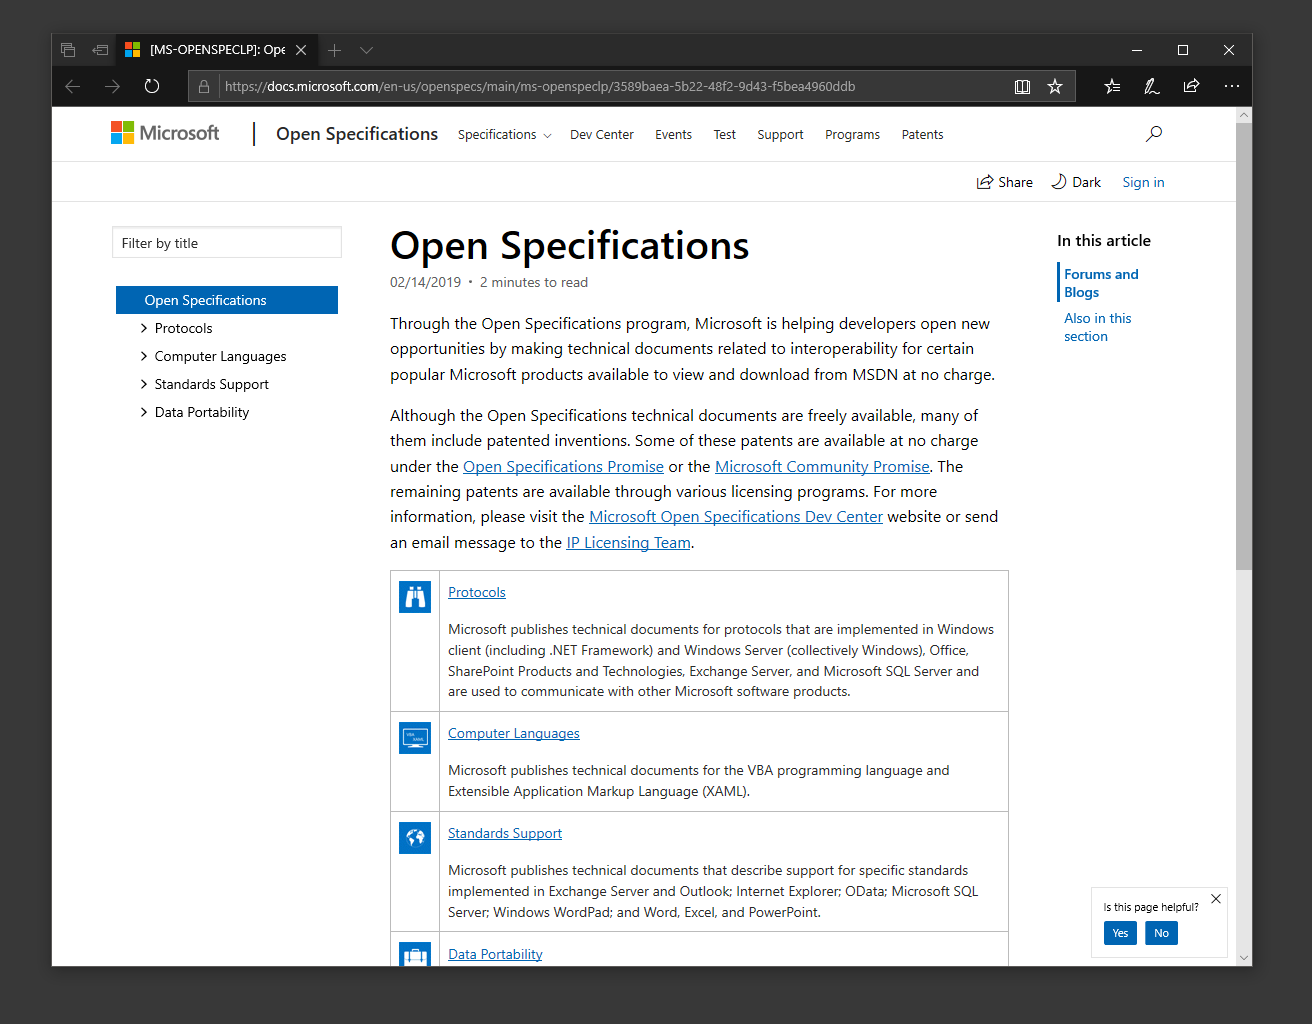 Groepering van Open Specifications-inhoud in de inhoudsopgave